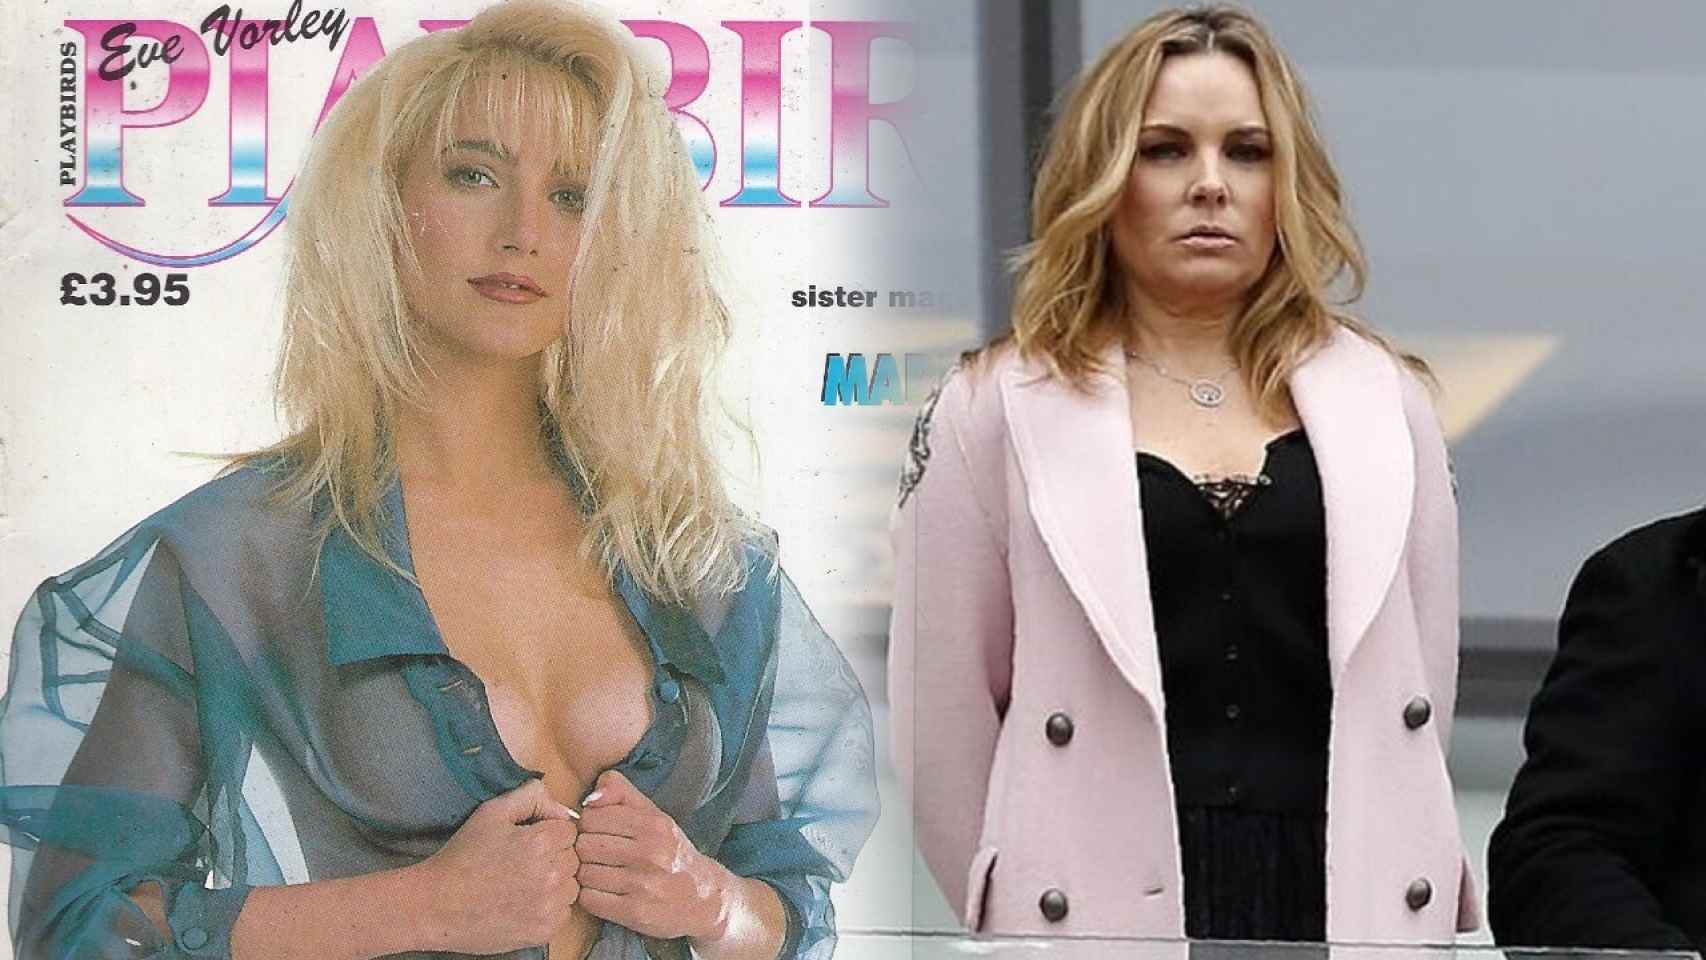 Emma Benton-Hughes, conocida en el mundo del porno como Eve Vorley, posando en una revista y durante un partido del West Hamen un fotomontaje